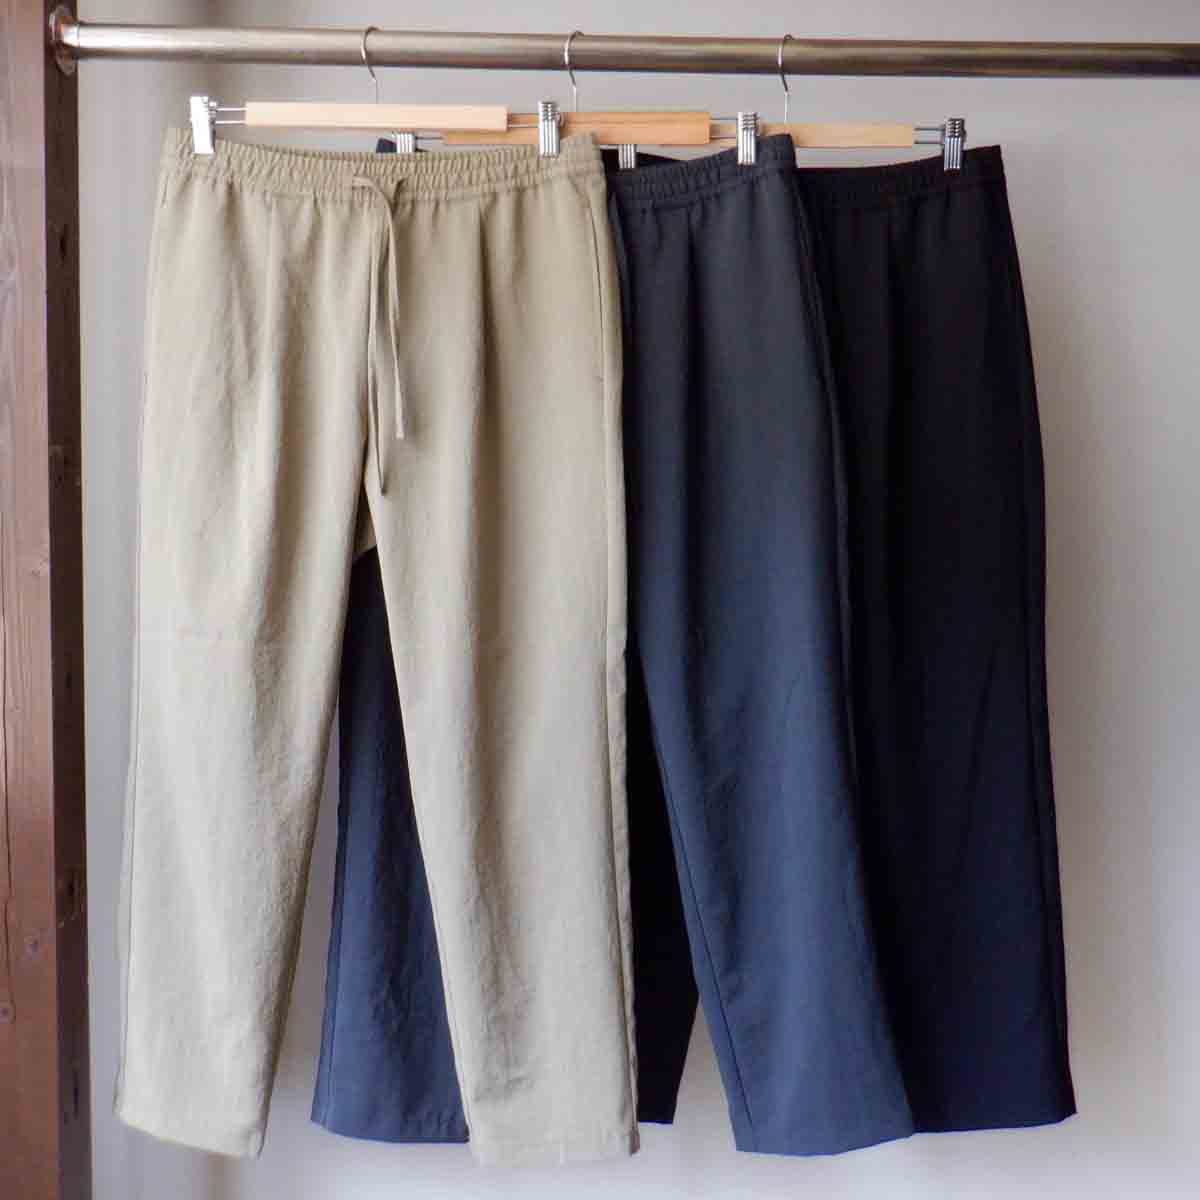 【再入荷】 LA MOND. ラモンド SHARI PANTS シャリパンツ 3 colors LM-P-022 ズボン・パンツ